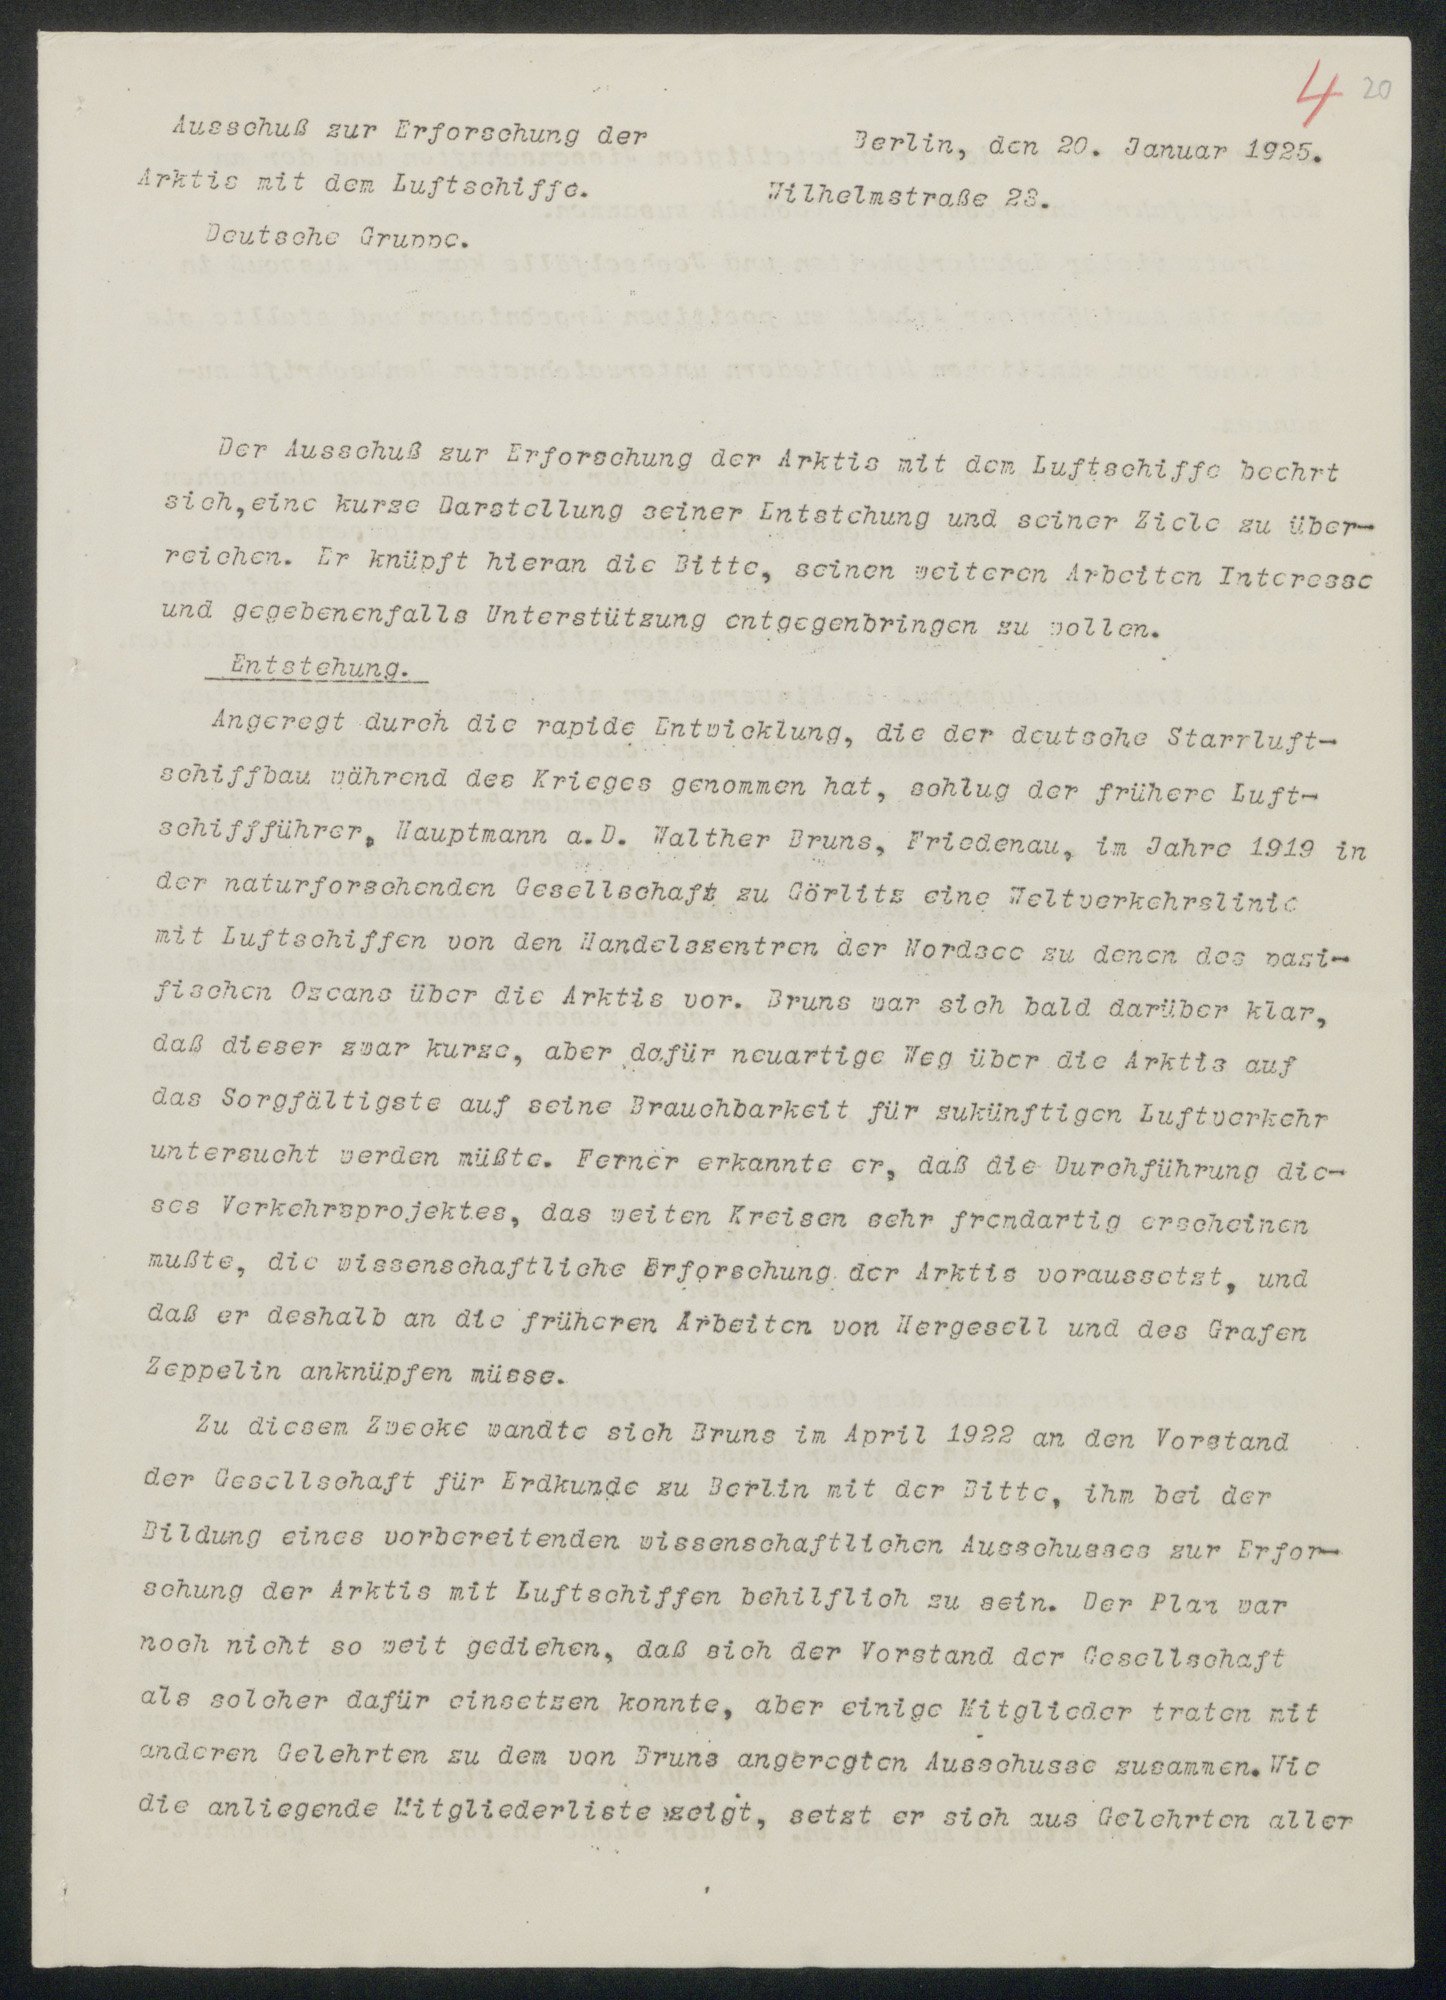 Brief des Ausschusses über die Entstehung der Studiengesellschaft (Wettermuseum CC BY-NC-SA)